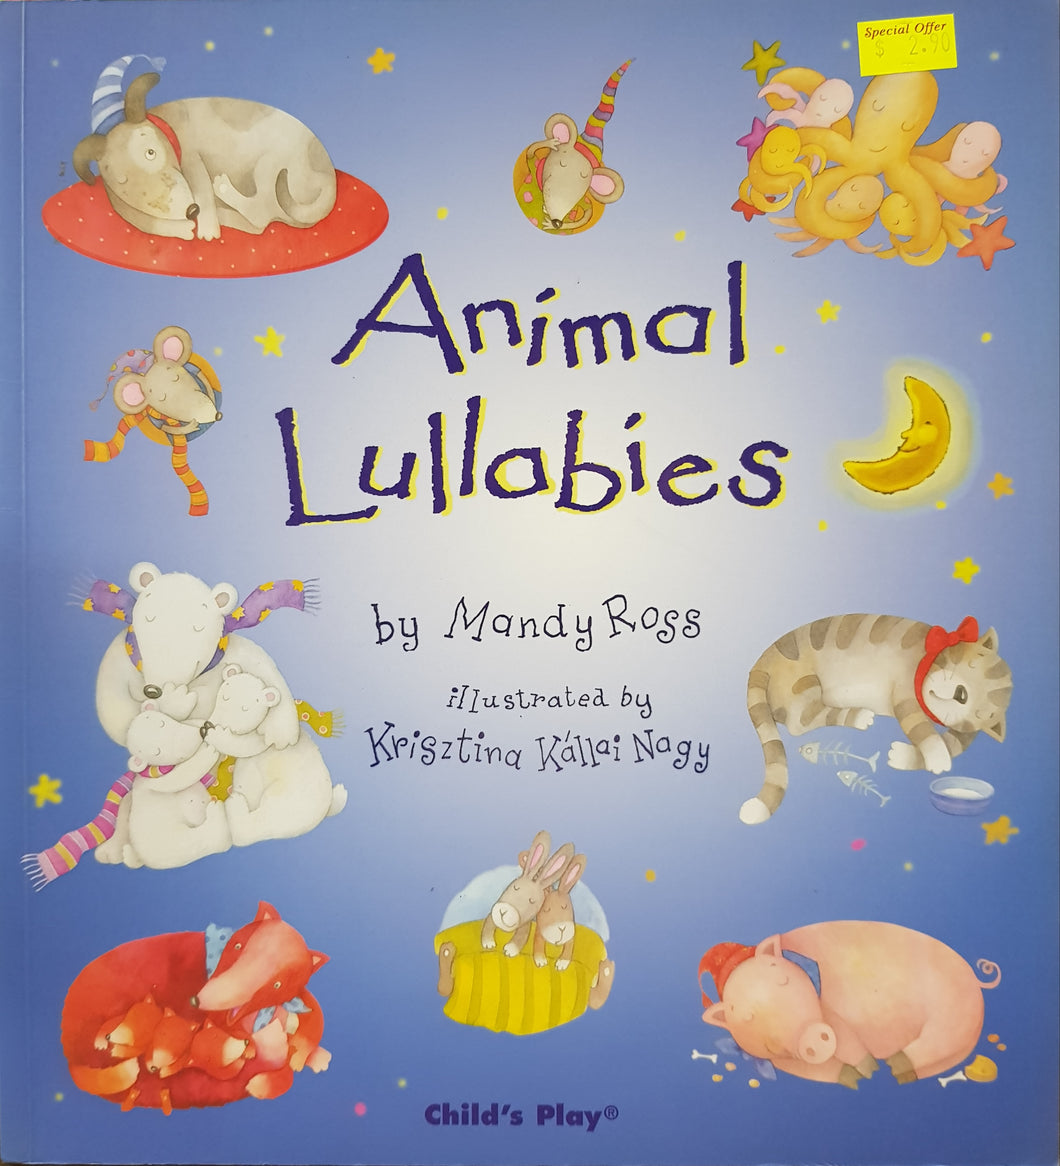 Animal Lullabies - Mandy Ross & Krisztina Kallai Nagy